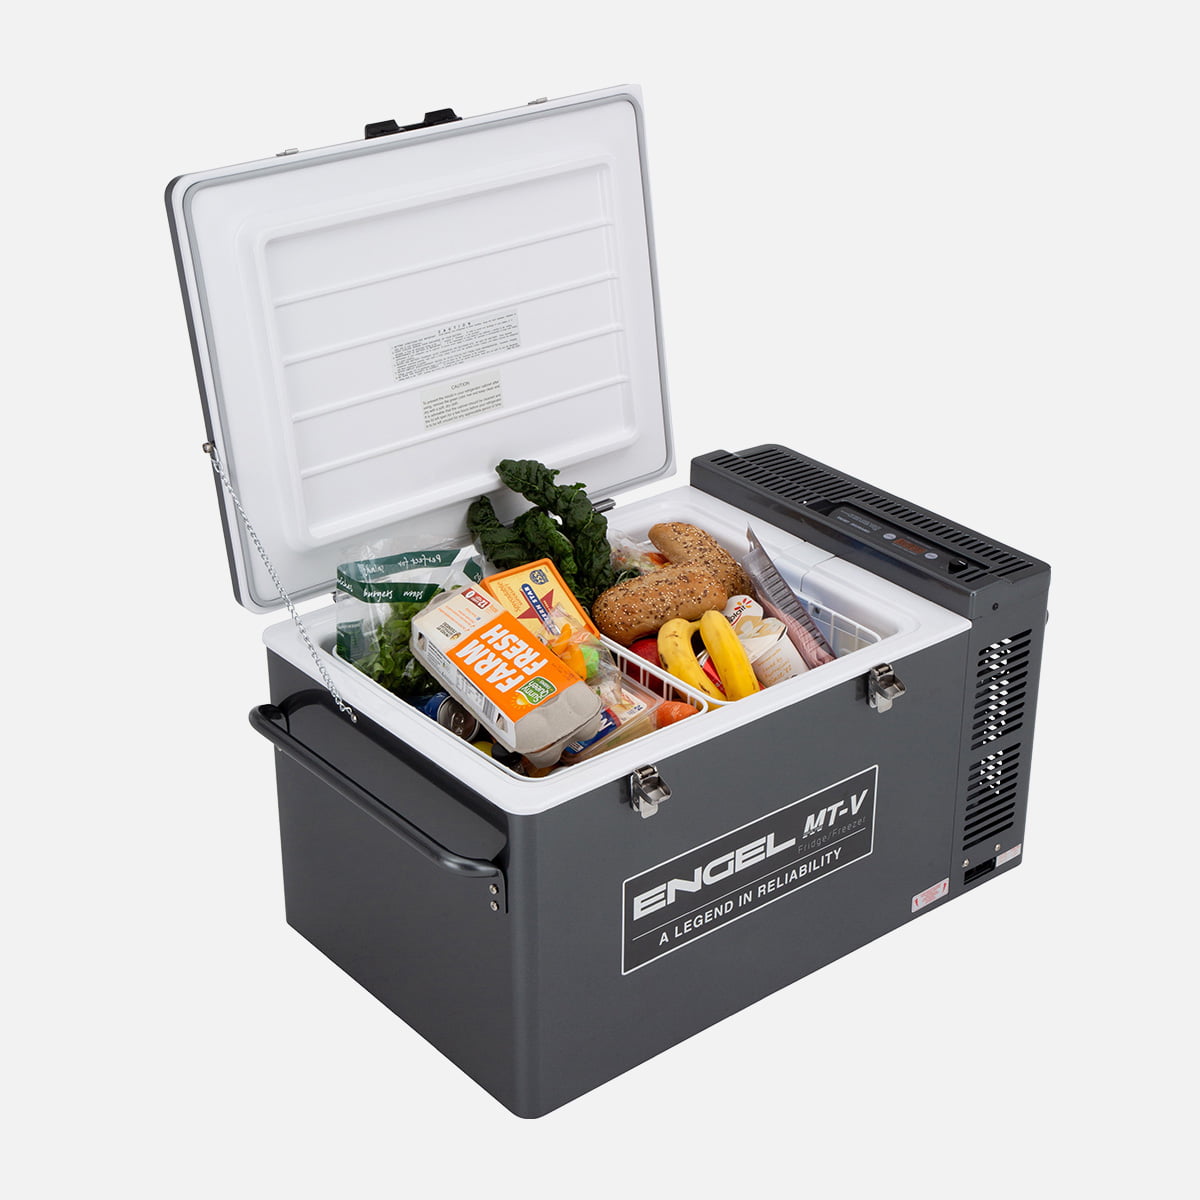 Engel MT-V Portable Fridge Freezer 60 Litre MT60F-G4D-V Open with food inside.